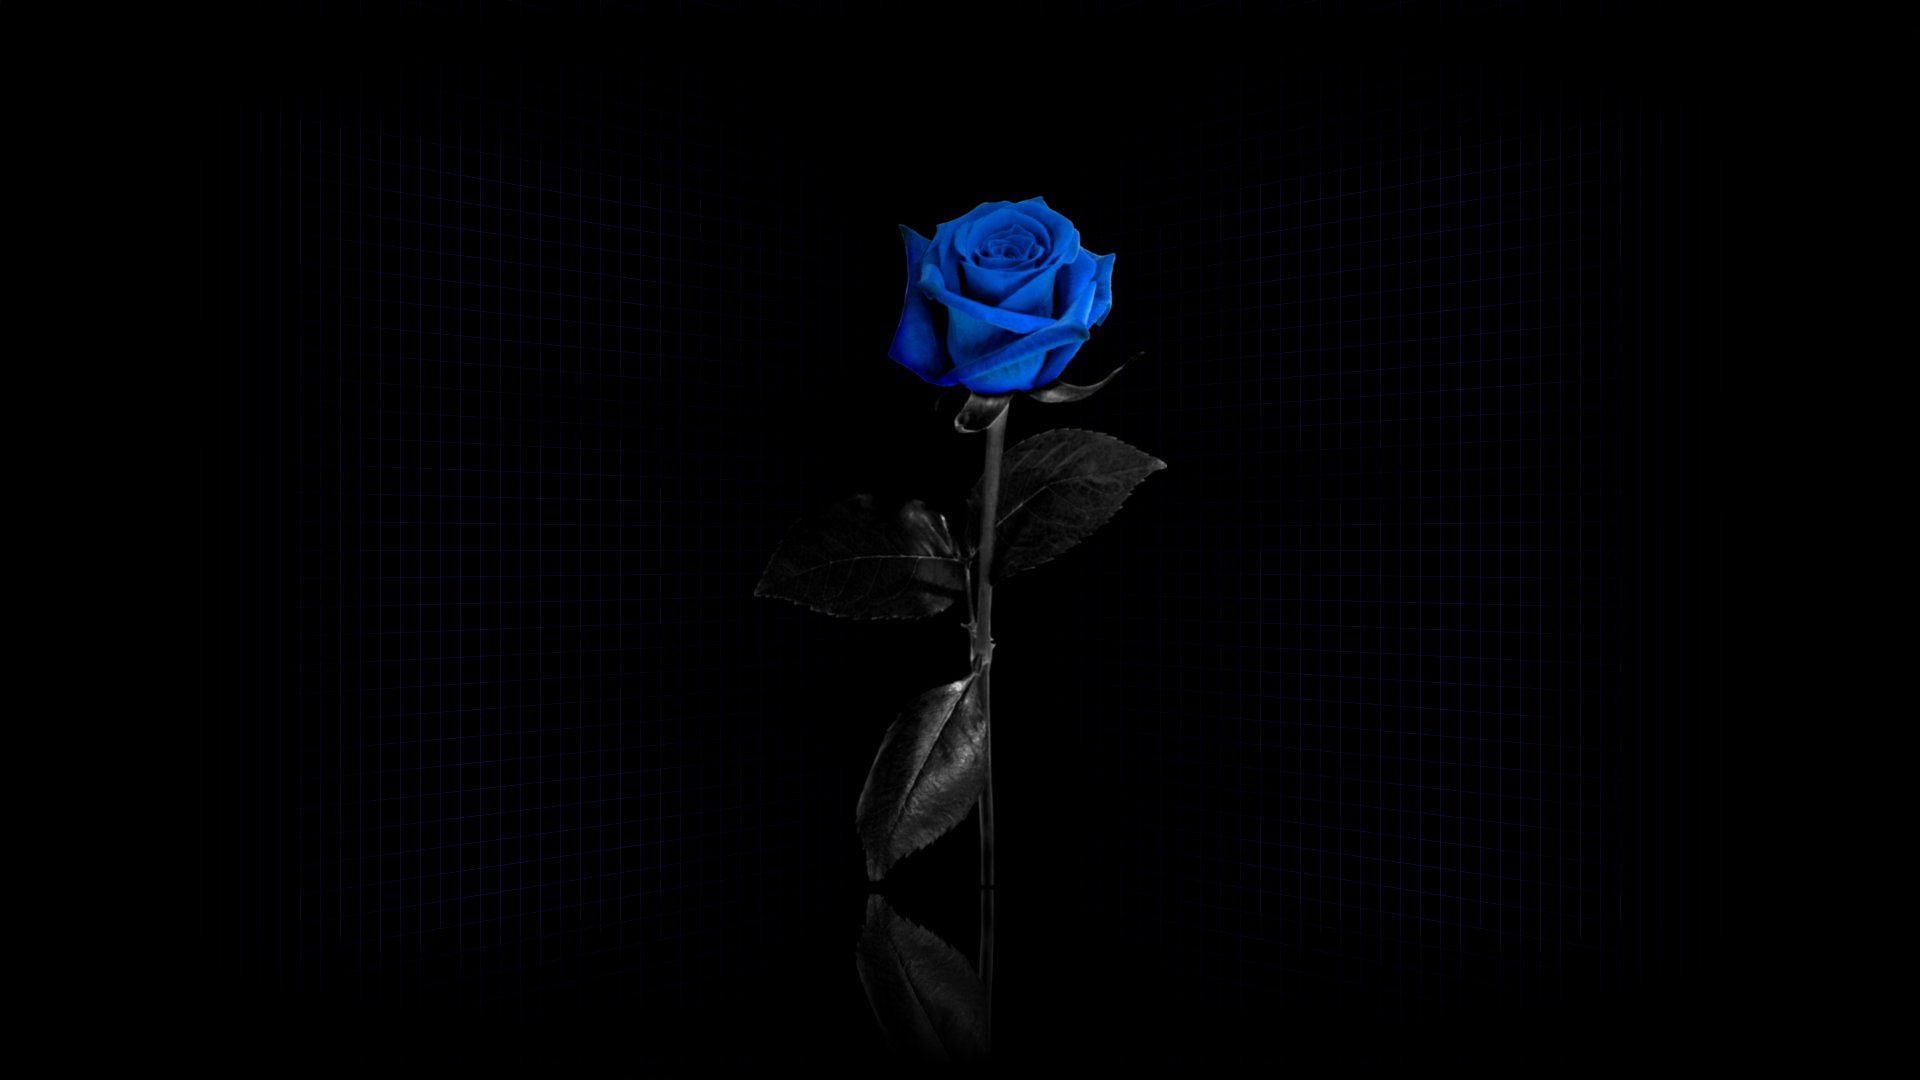 rose, rose flower, dark, grid, blue, reflection, flower Full HD